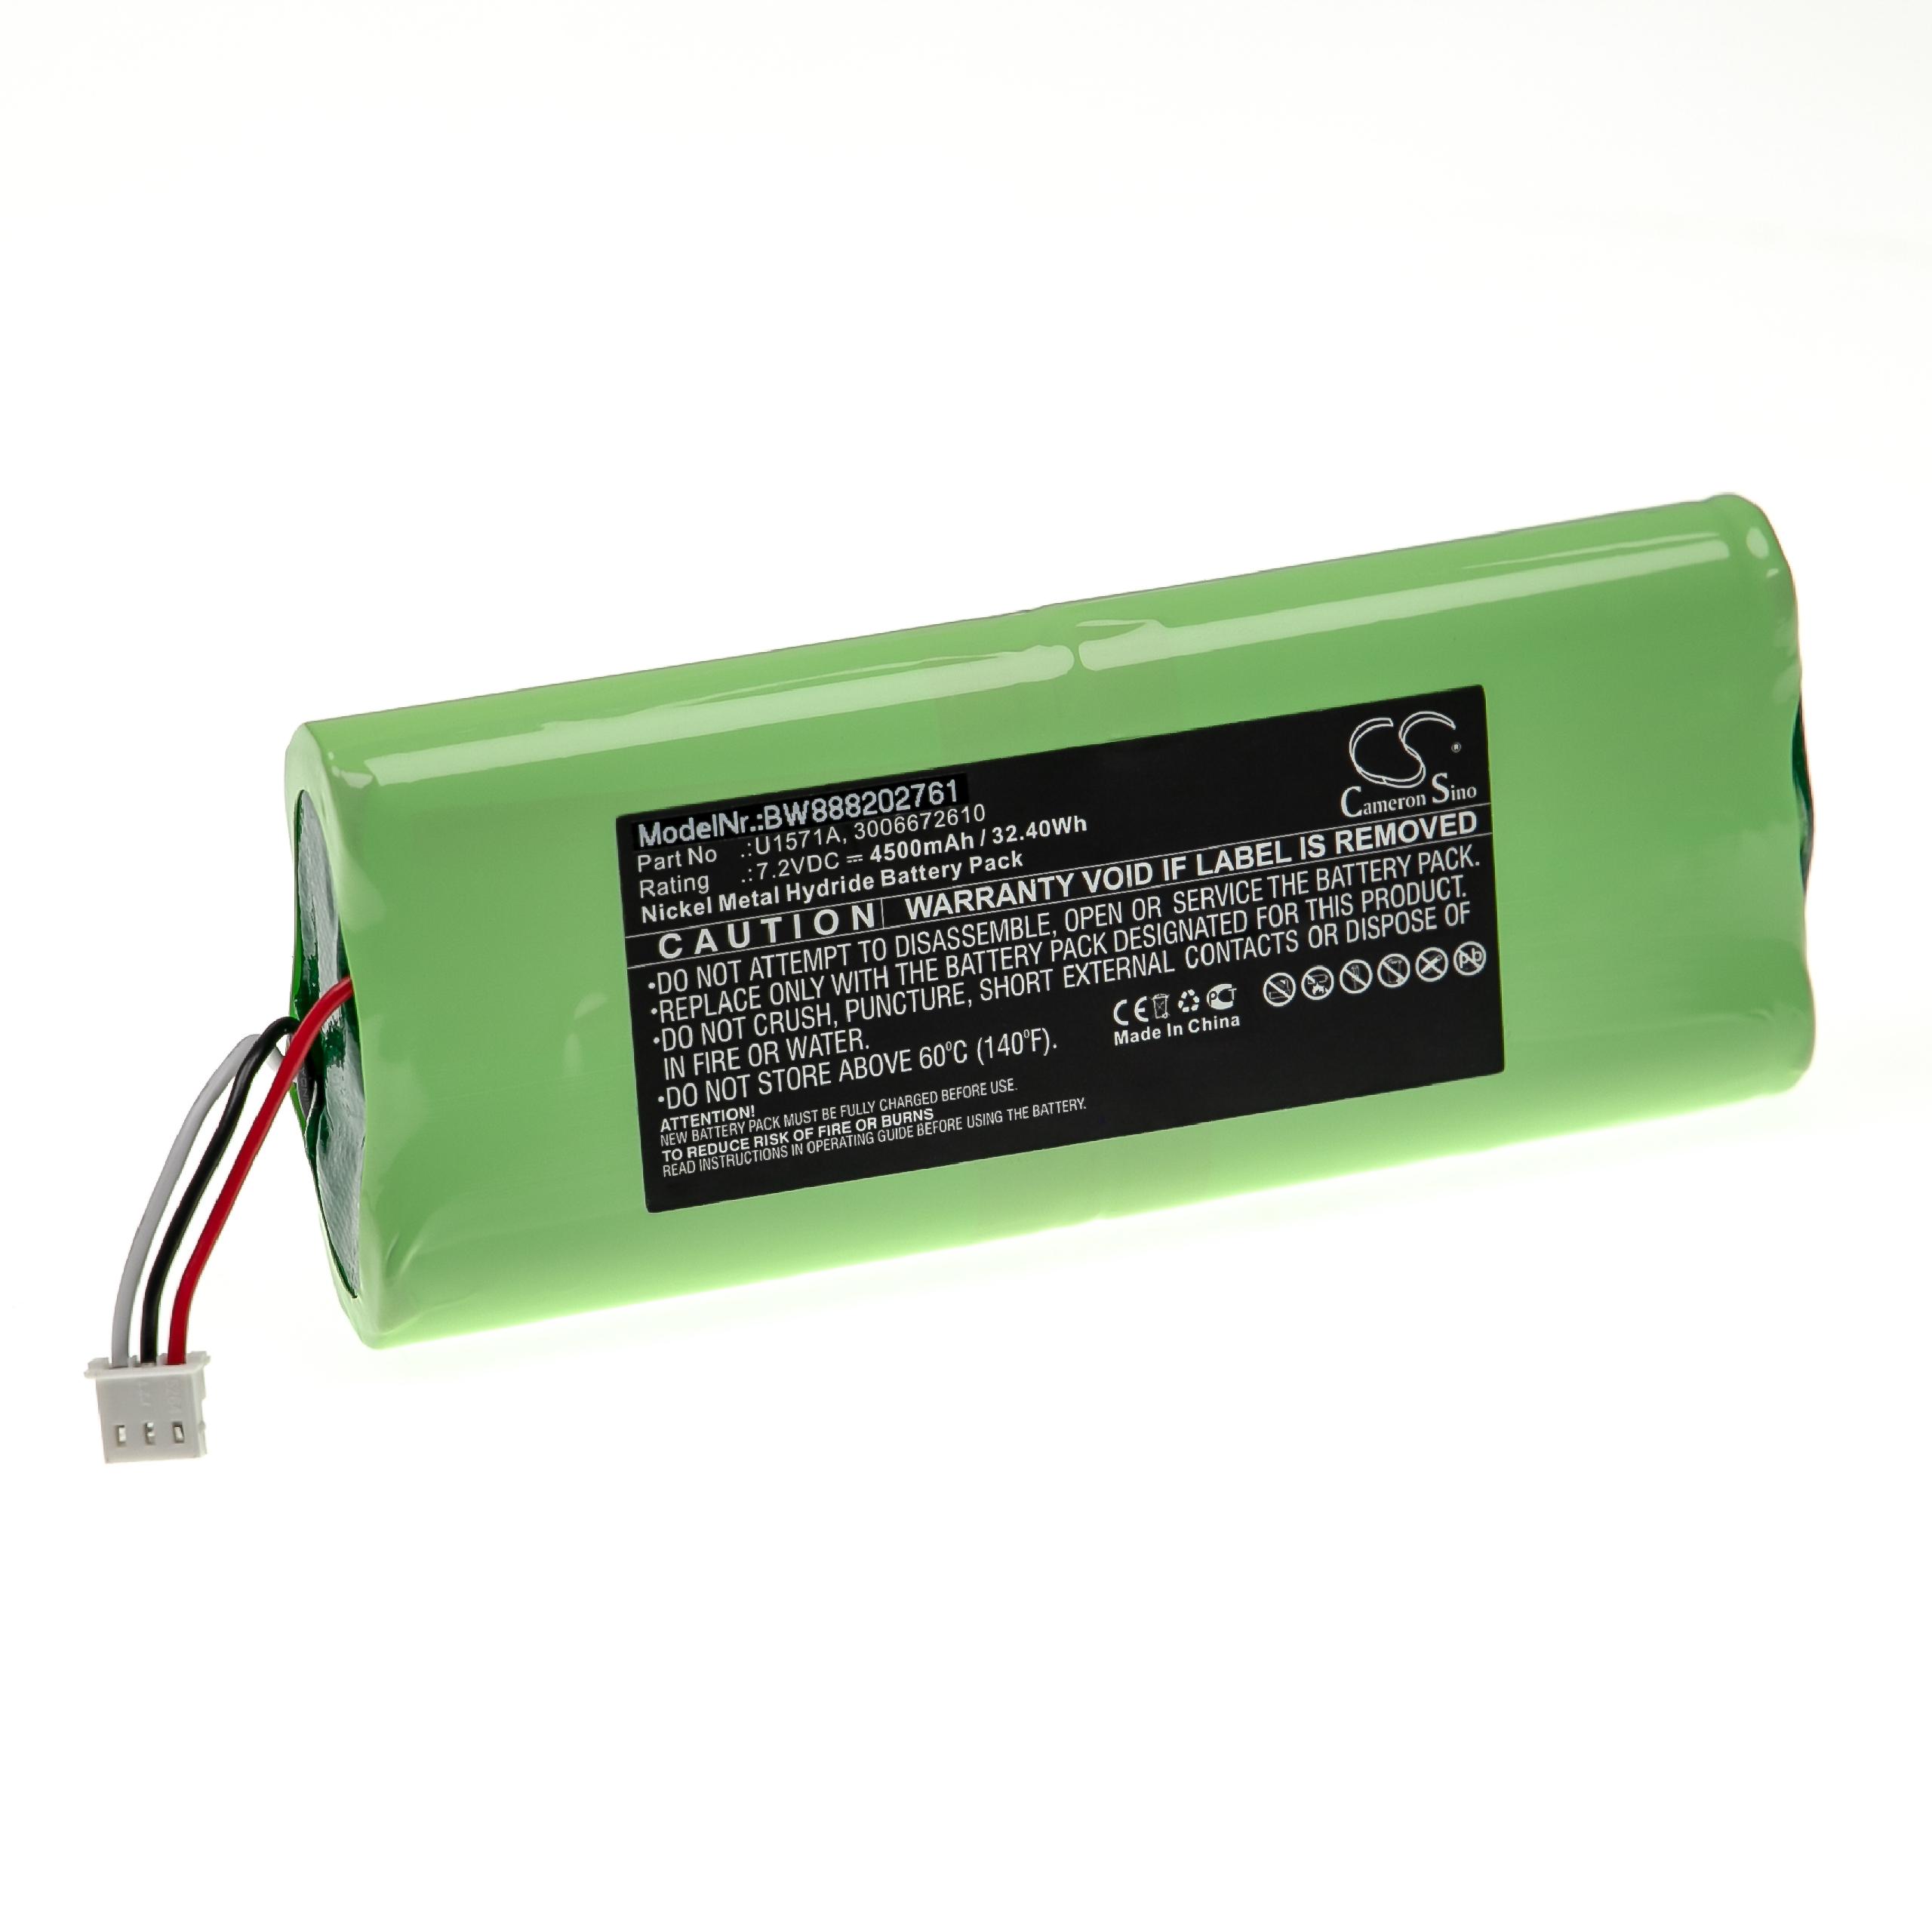 Batterie remplace Keysight U1571A, 3006672610 pour outil de mesure - 4500mAh 7,2V NiMH